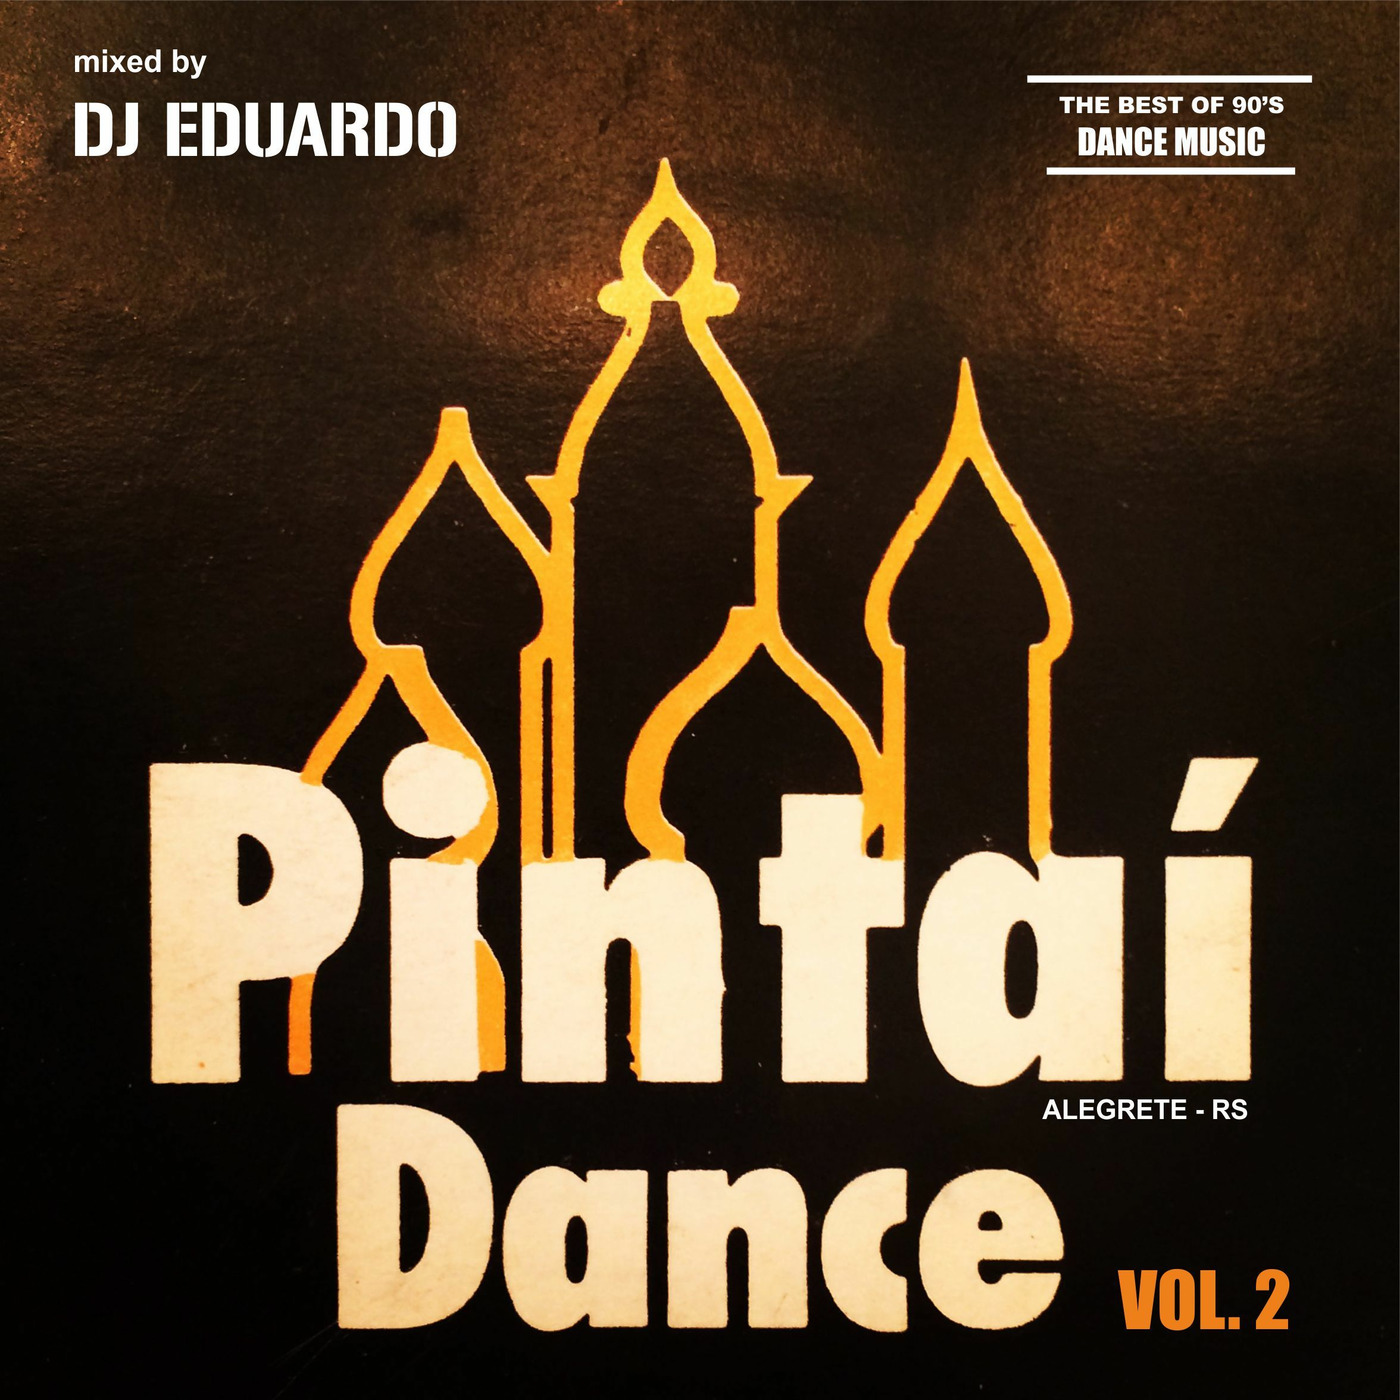 Pintaí Dance Vol. 2